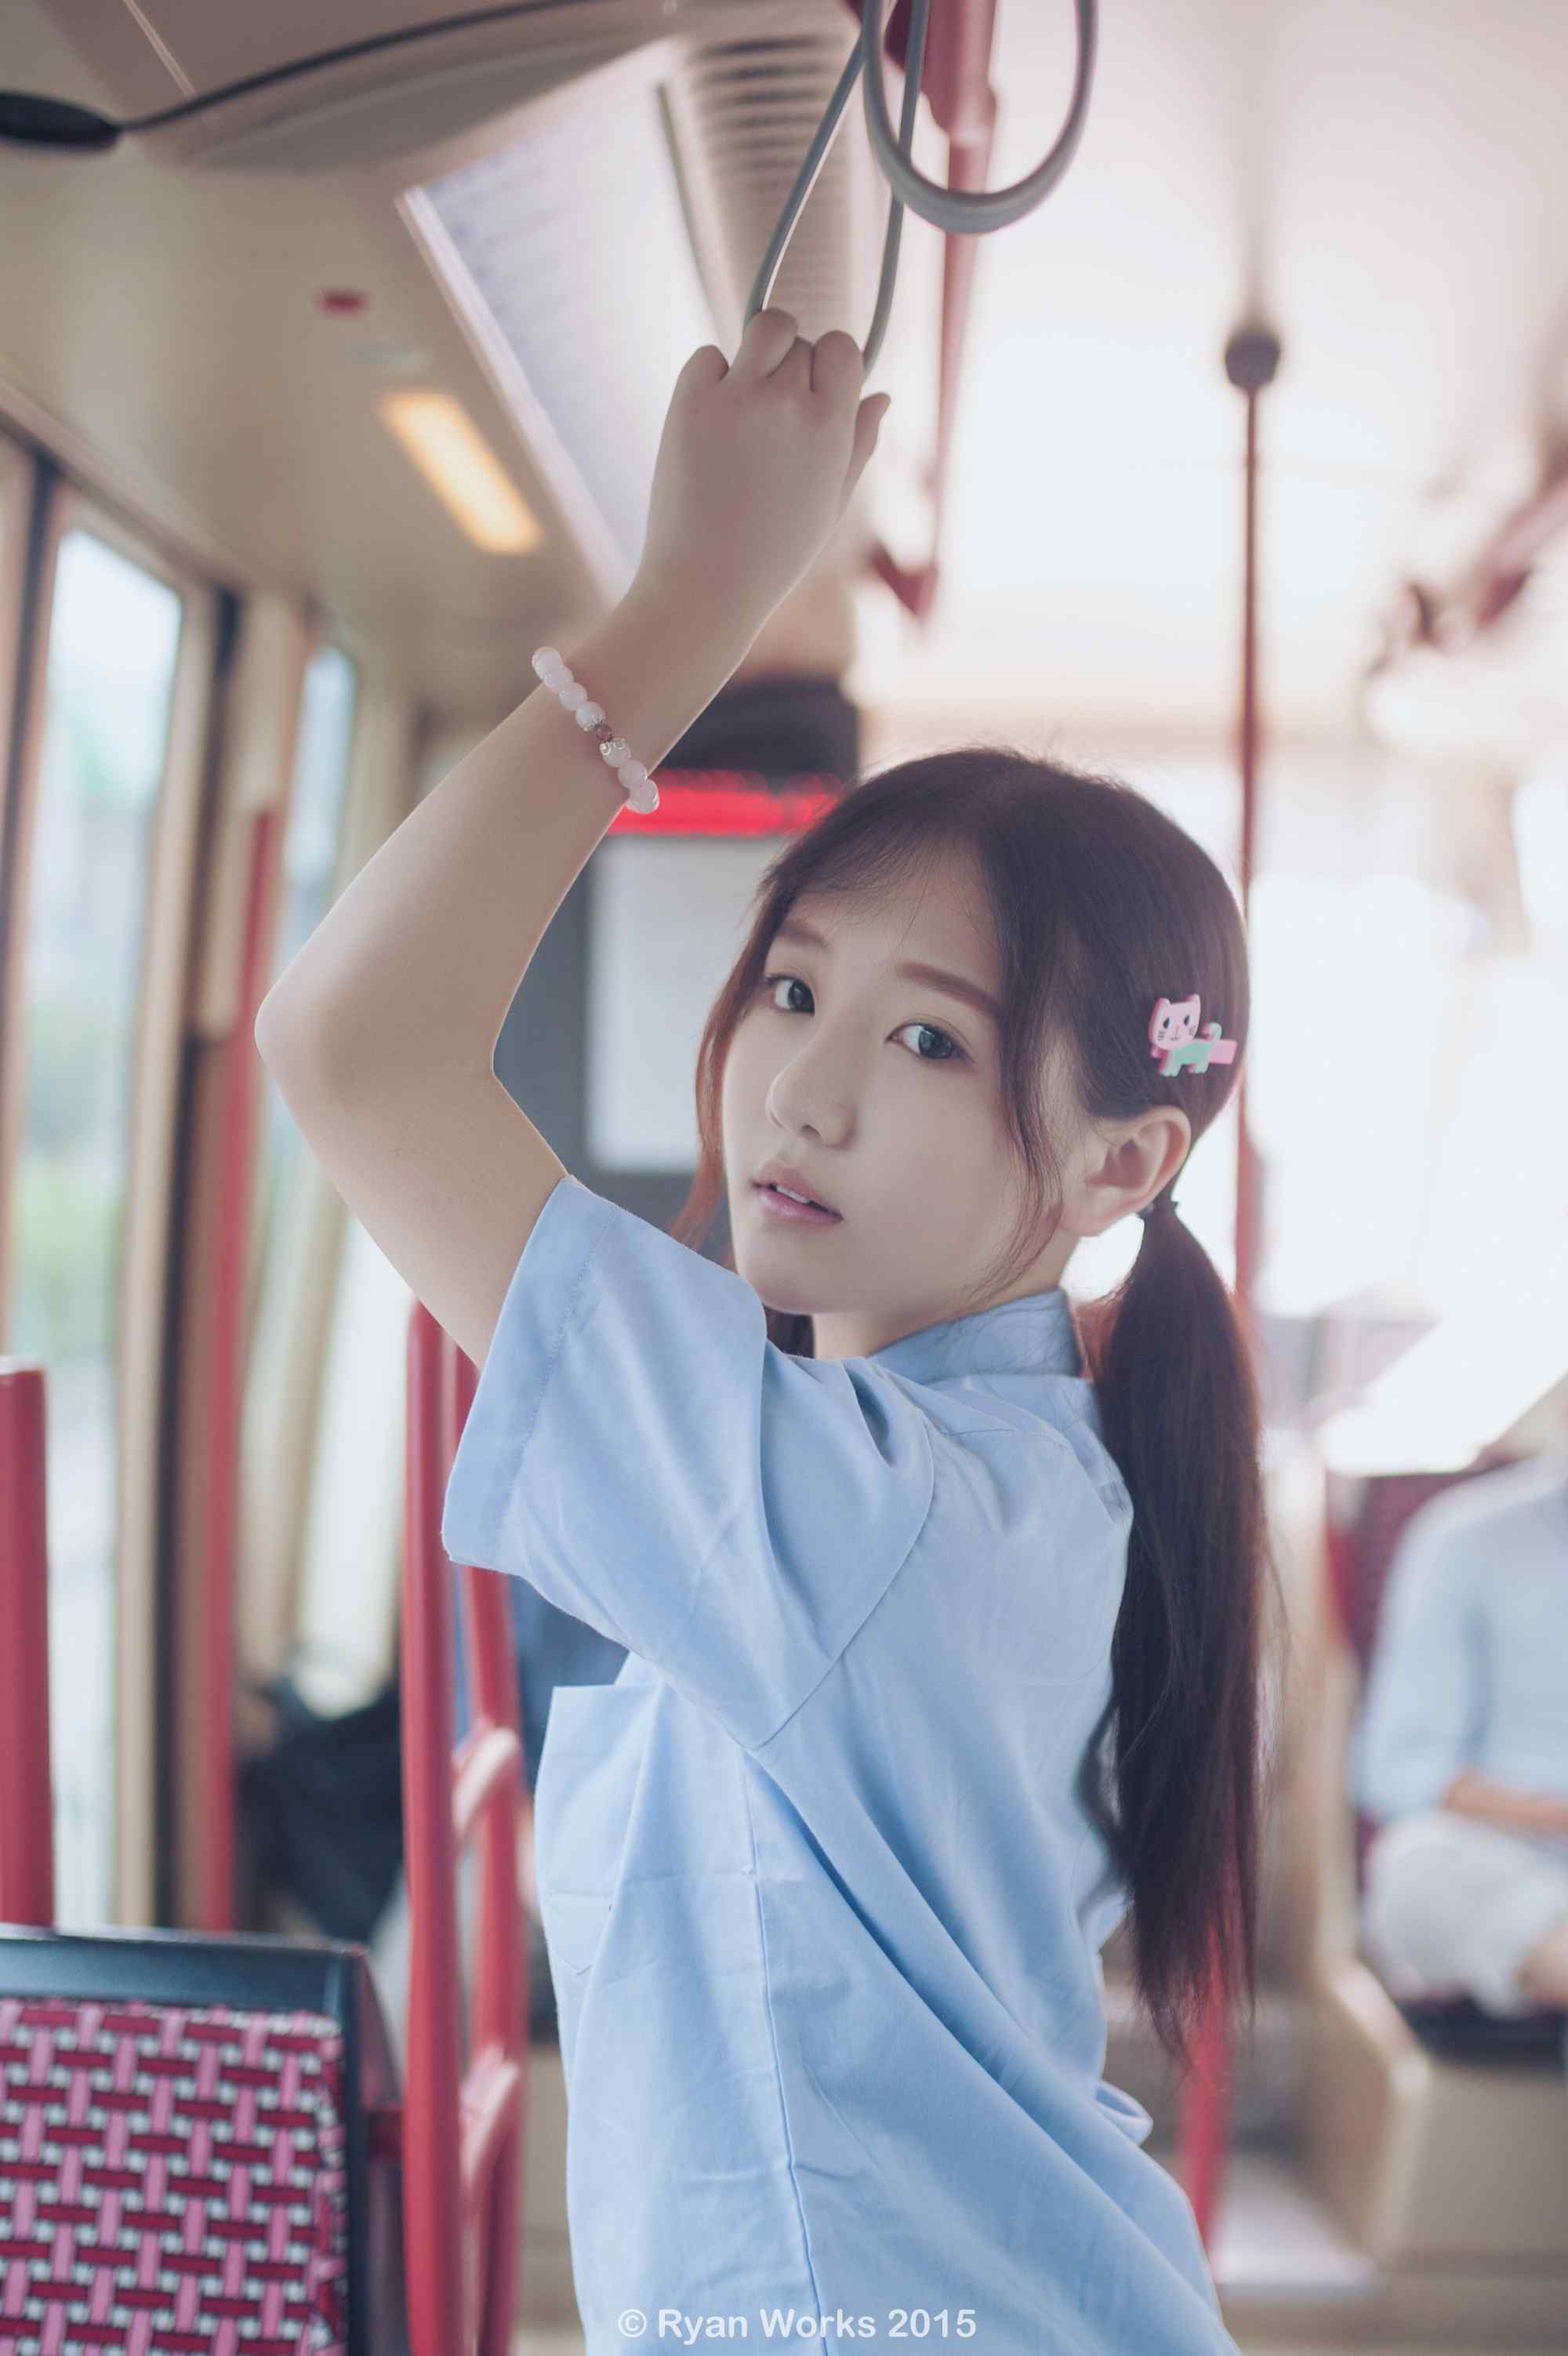 JK制服—电车上的可爱少女手机壁纸